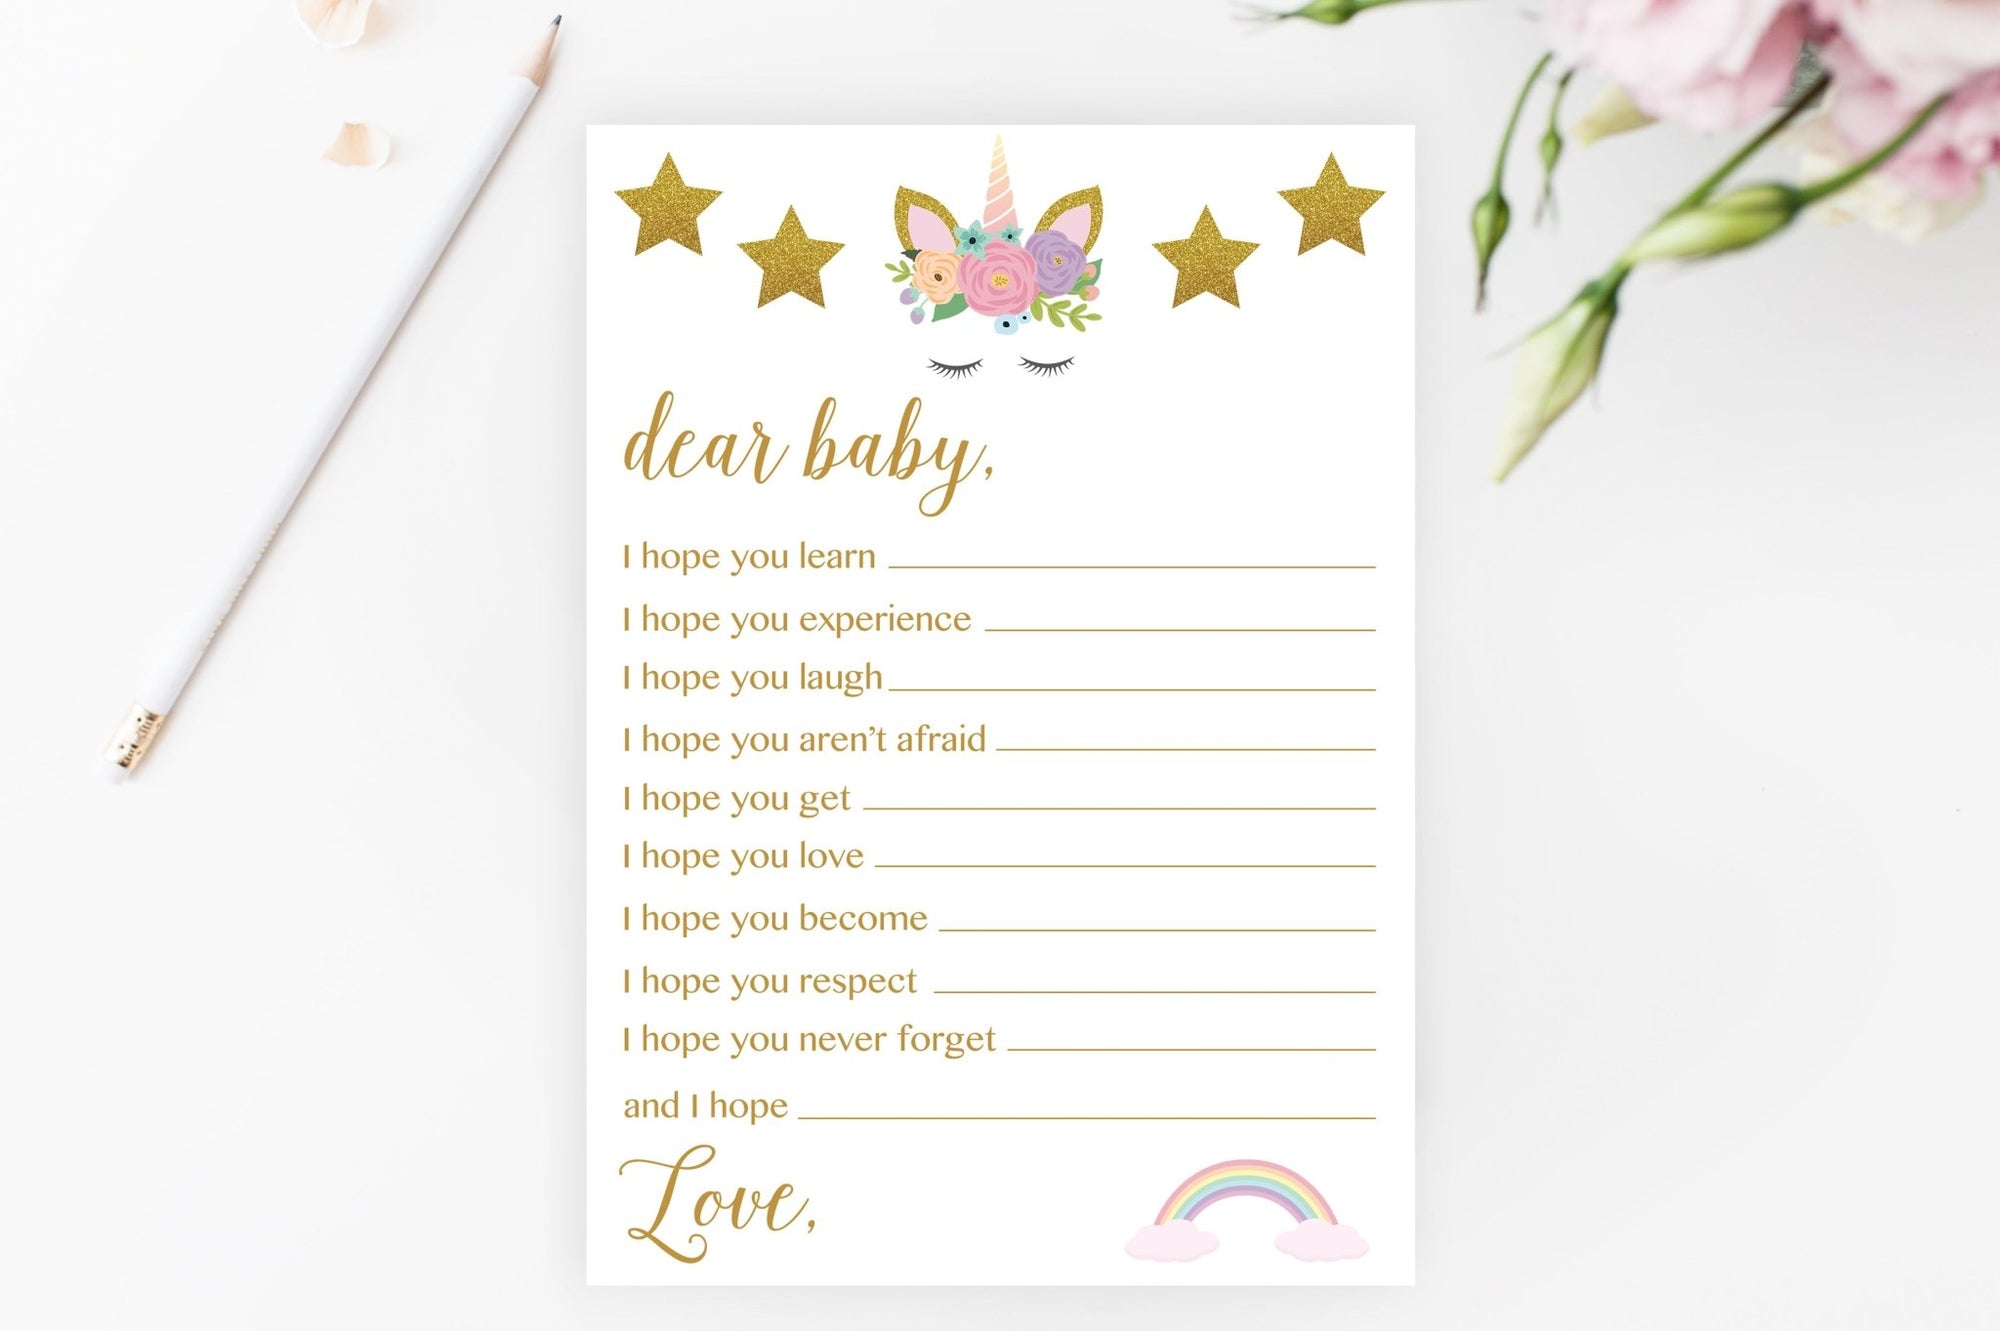 Dear Baby - Glitter Unicorn Printable - Pretty Collected